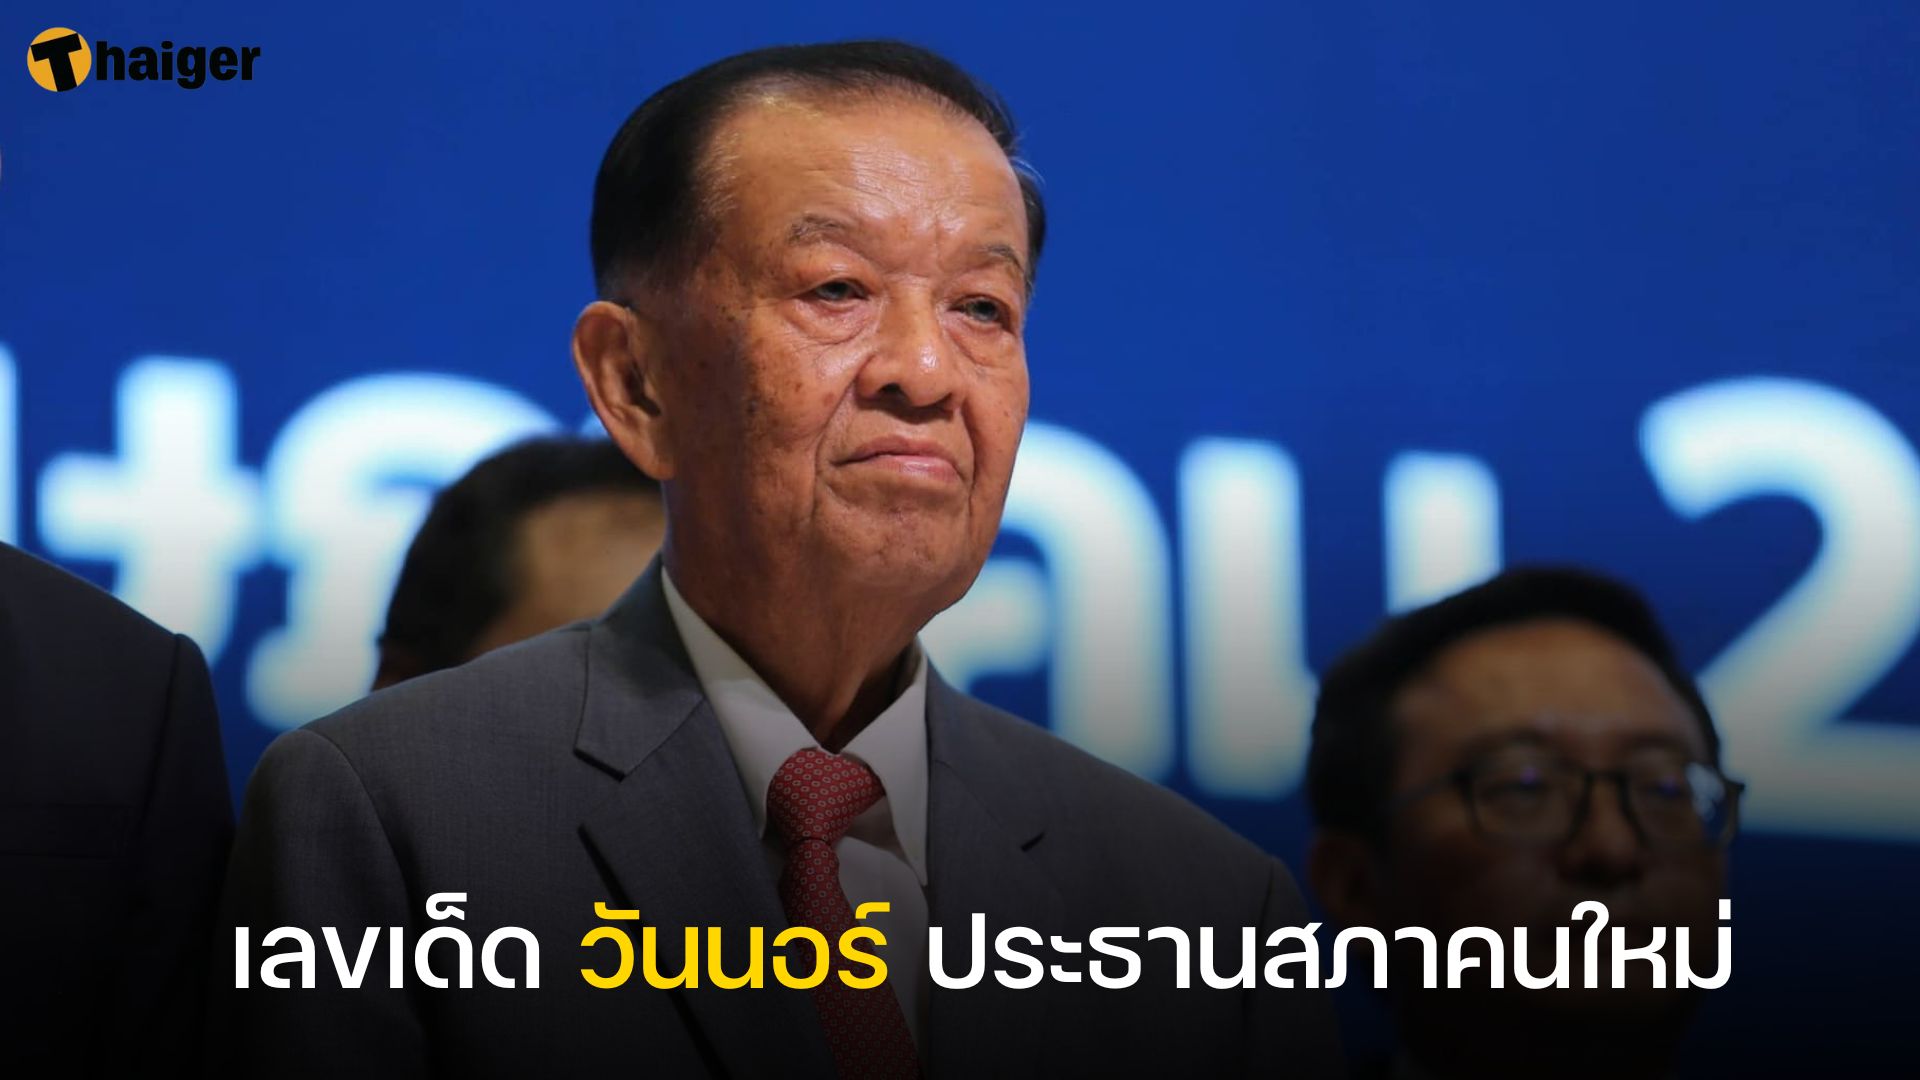 แห่เก็งเลขเด็ด วันนอร์ ประธานสภาคนใหม่ | Thaiger ข่าวไทย